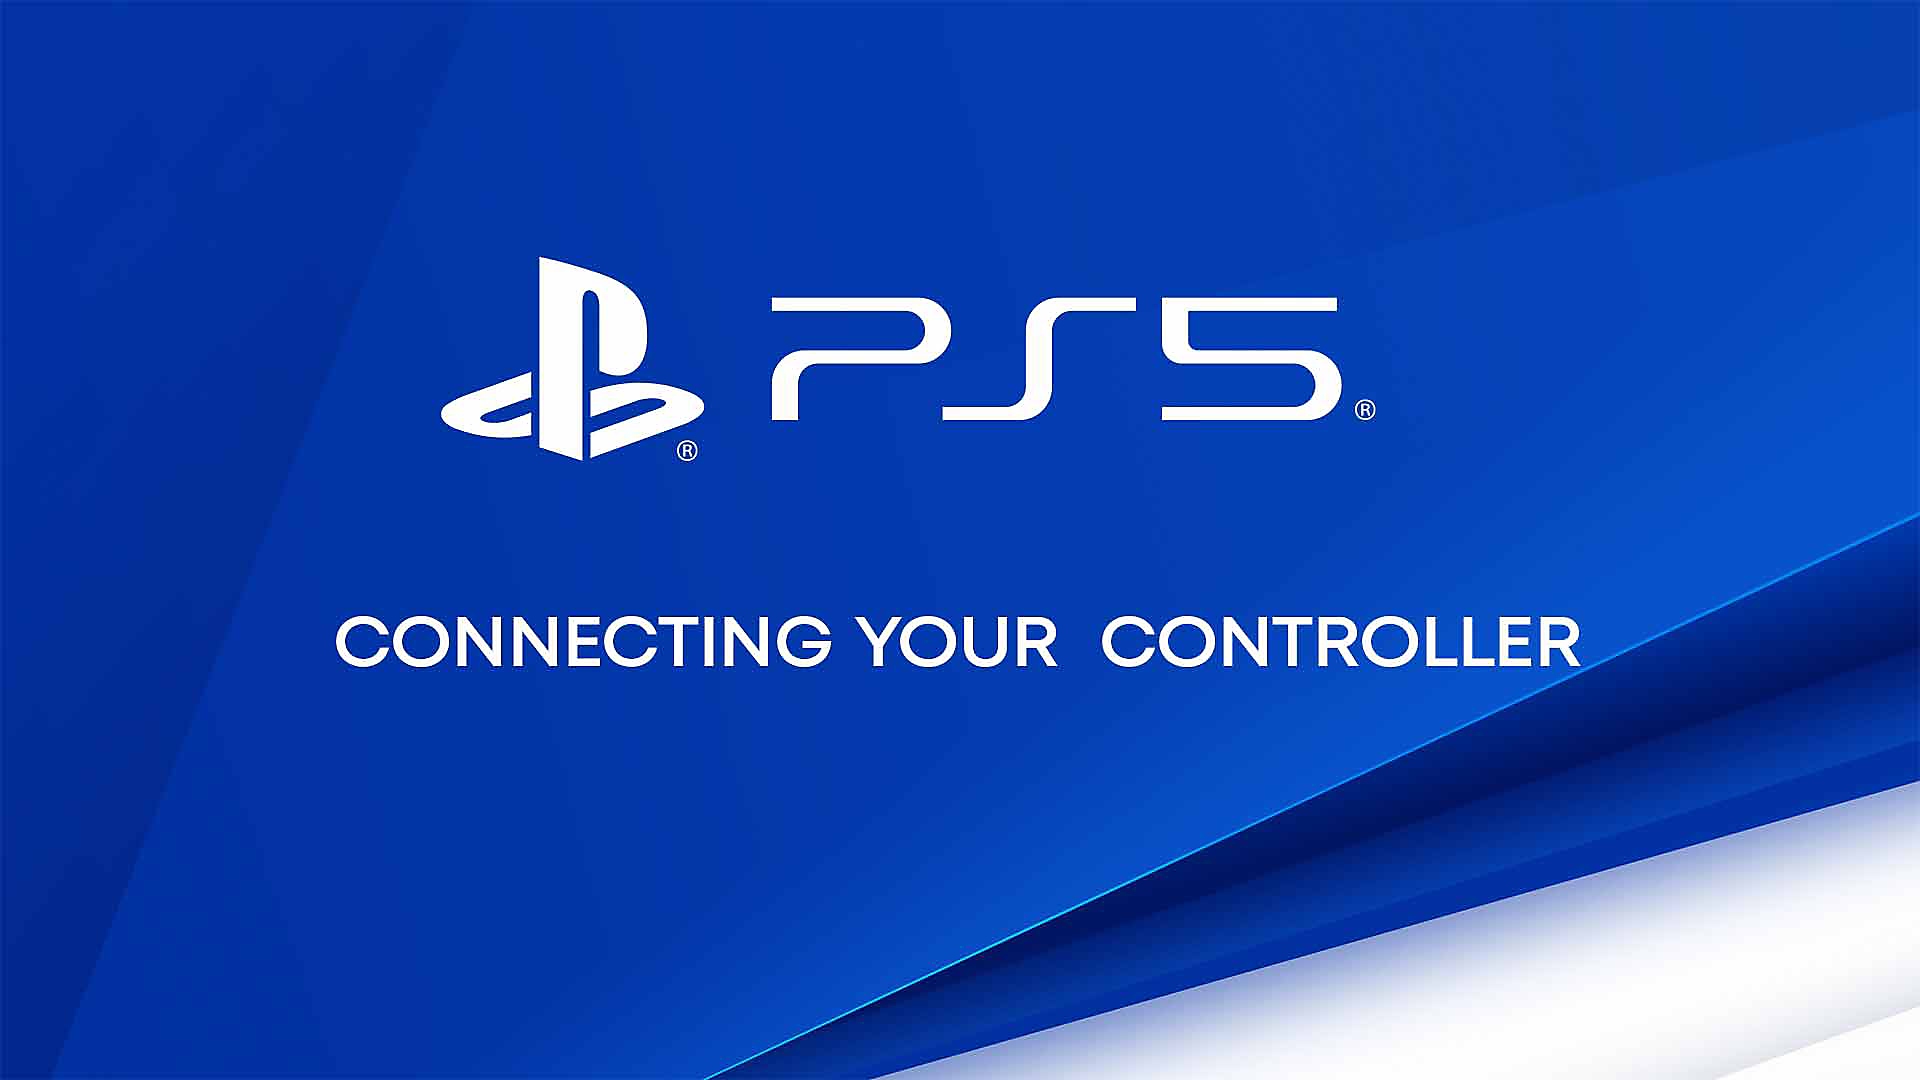 Vídeo demonstrando como emparelhar o controle Access com um console PS5